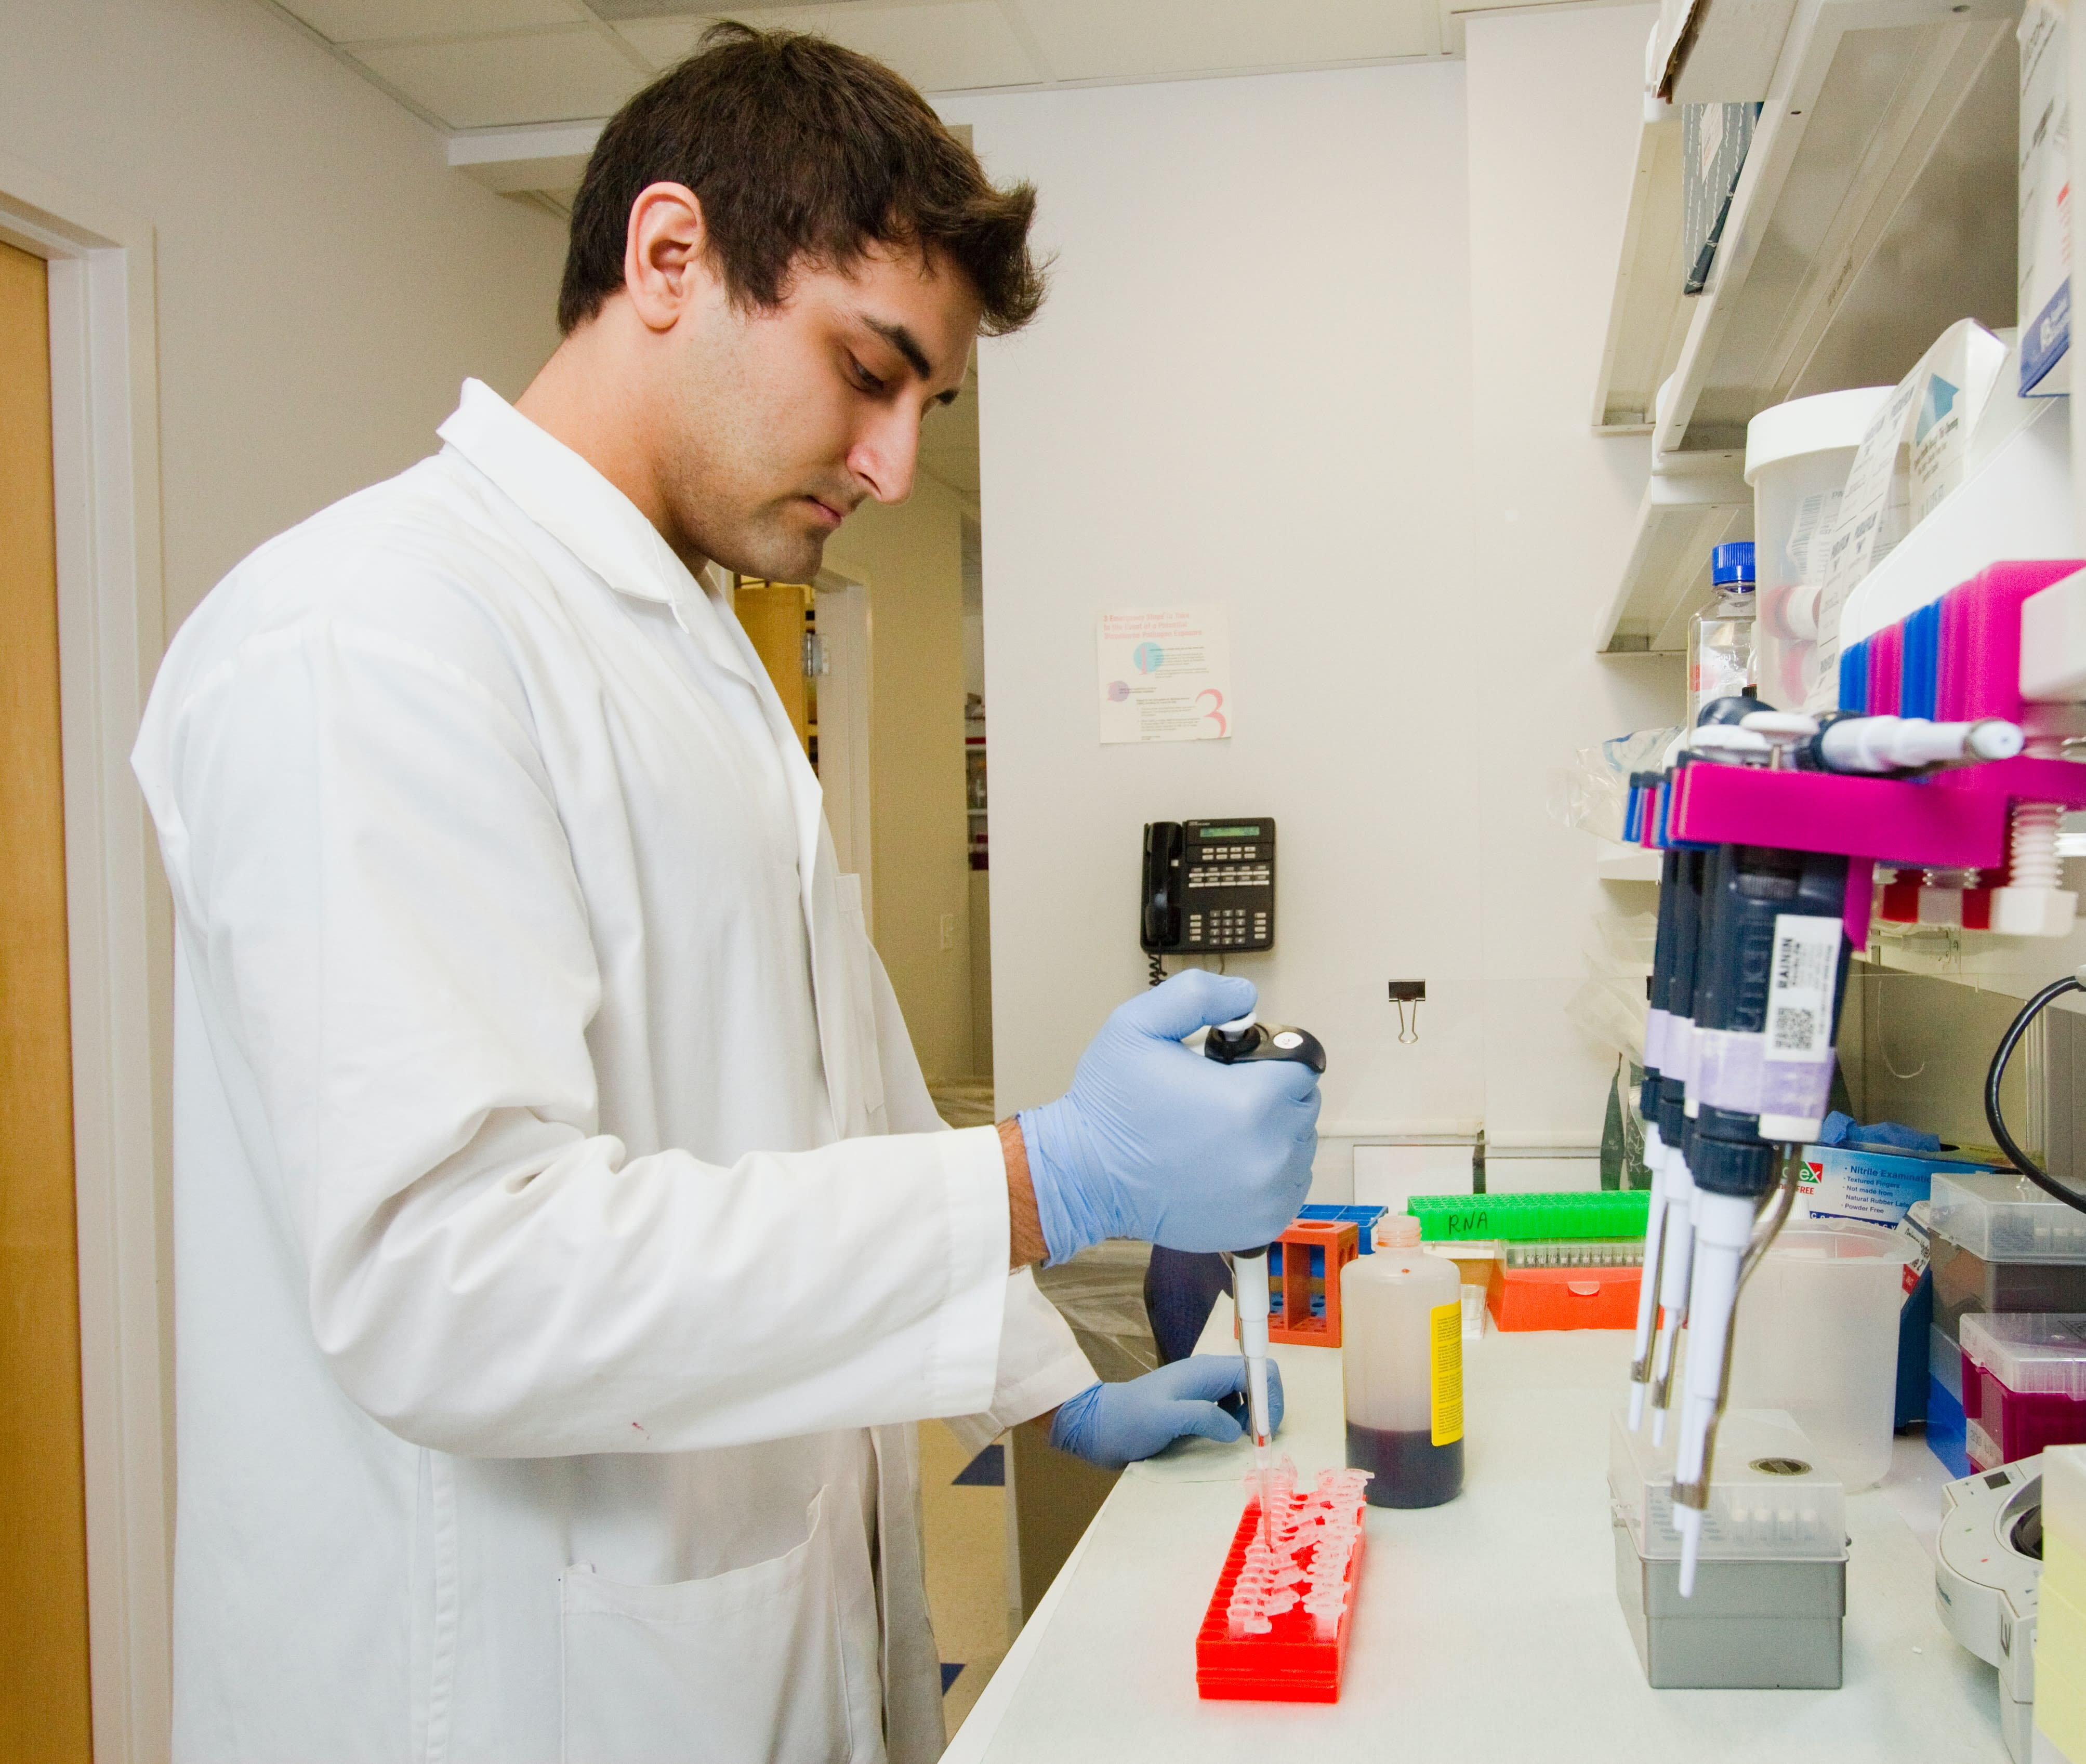 Ένας άνδρας επιστήμονας σε ένα εργαστήριο διοχετεύει πιπέτα με αντιδραστήριο πρωτεΐνης σε σωλήνες eppendorf.